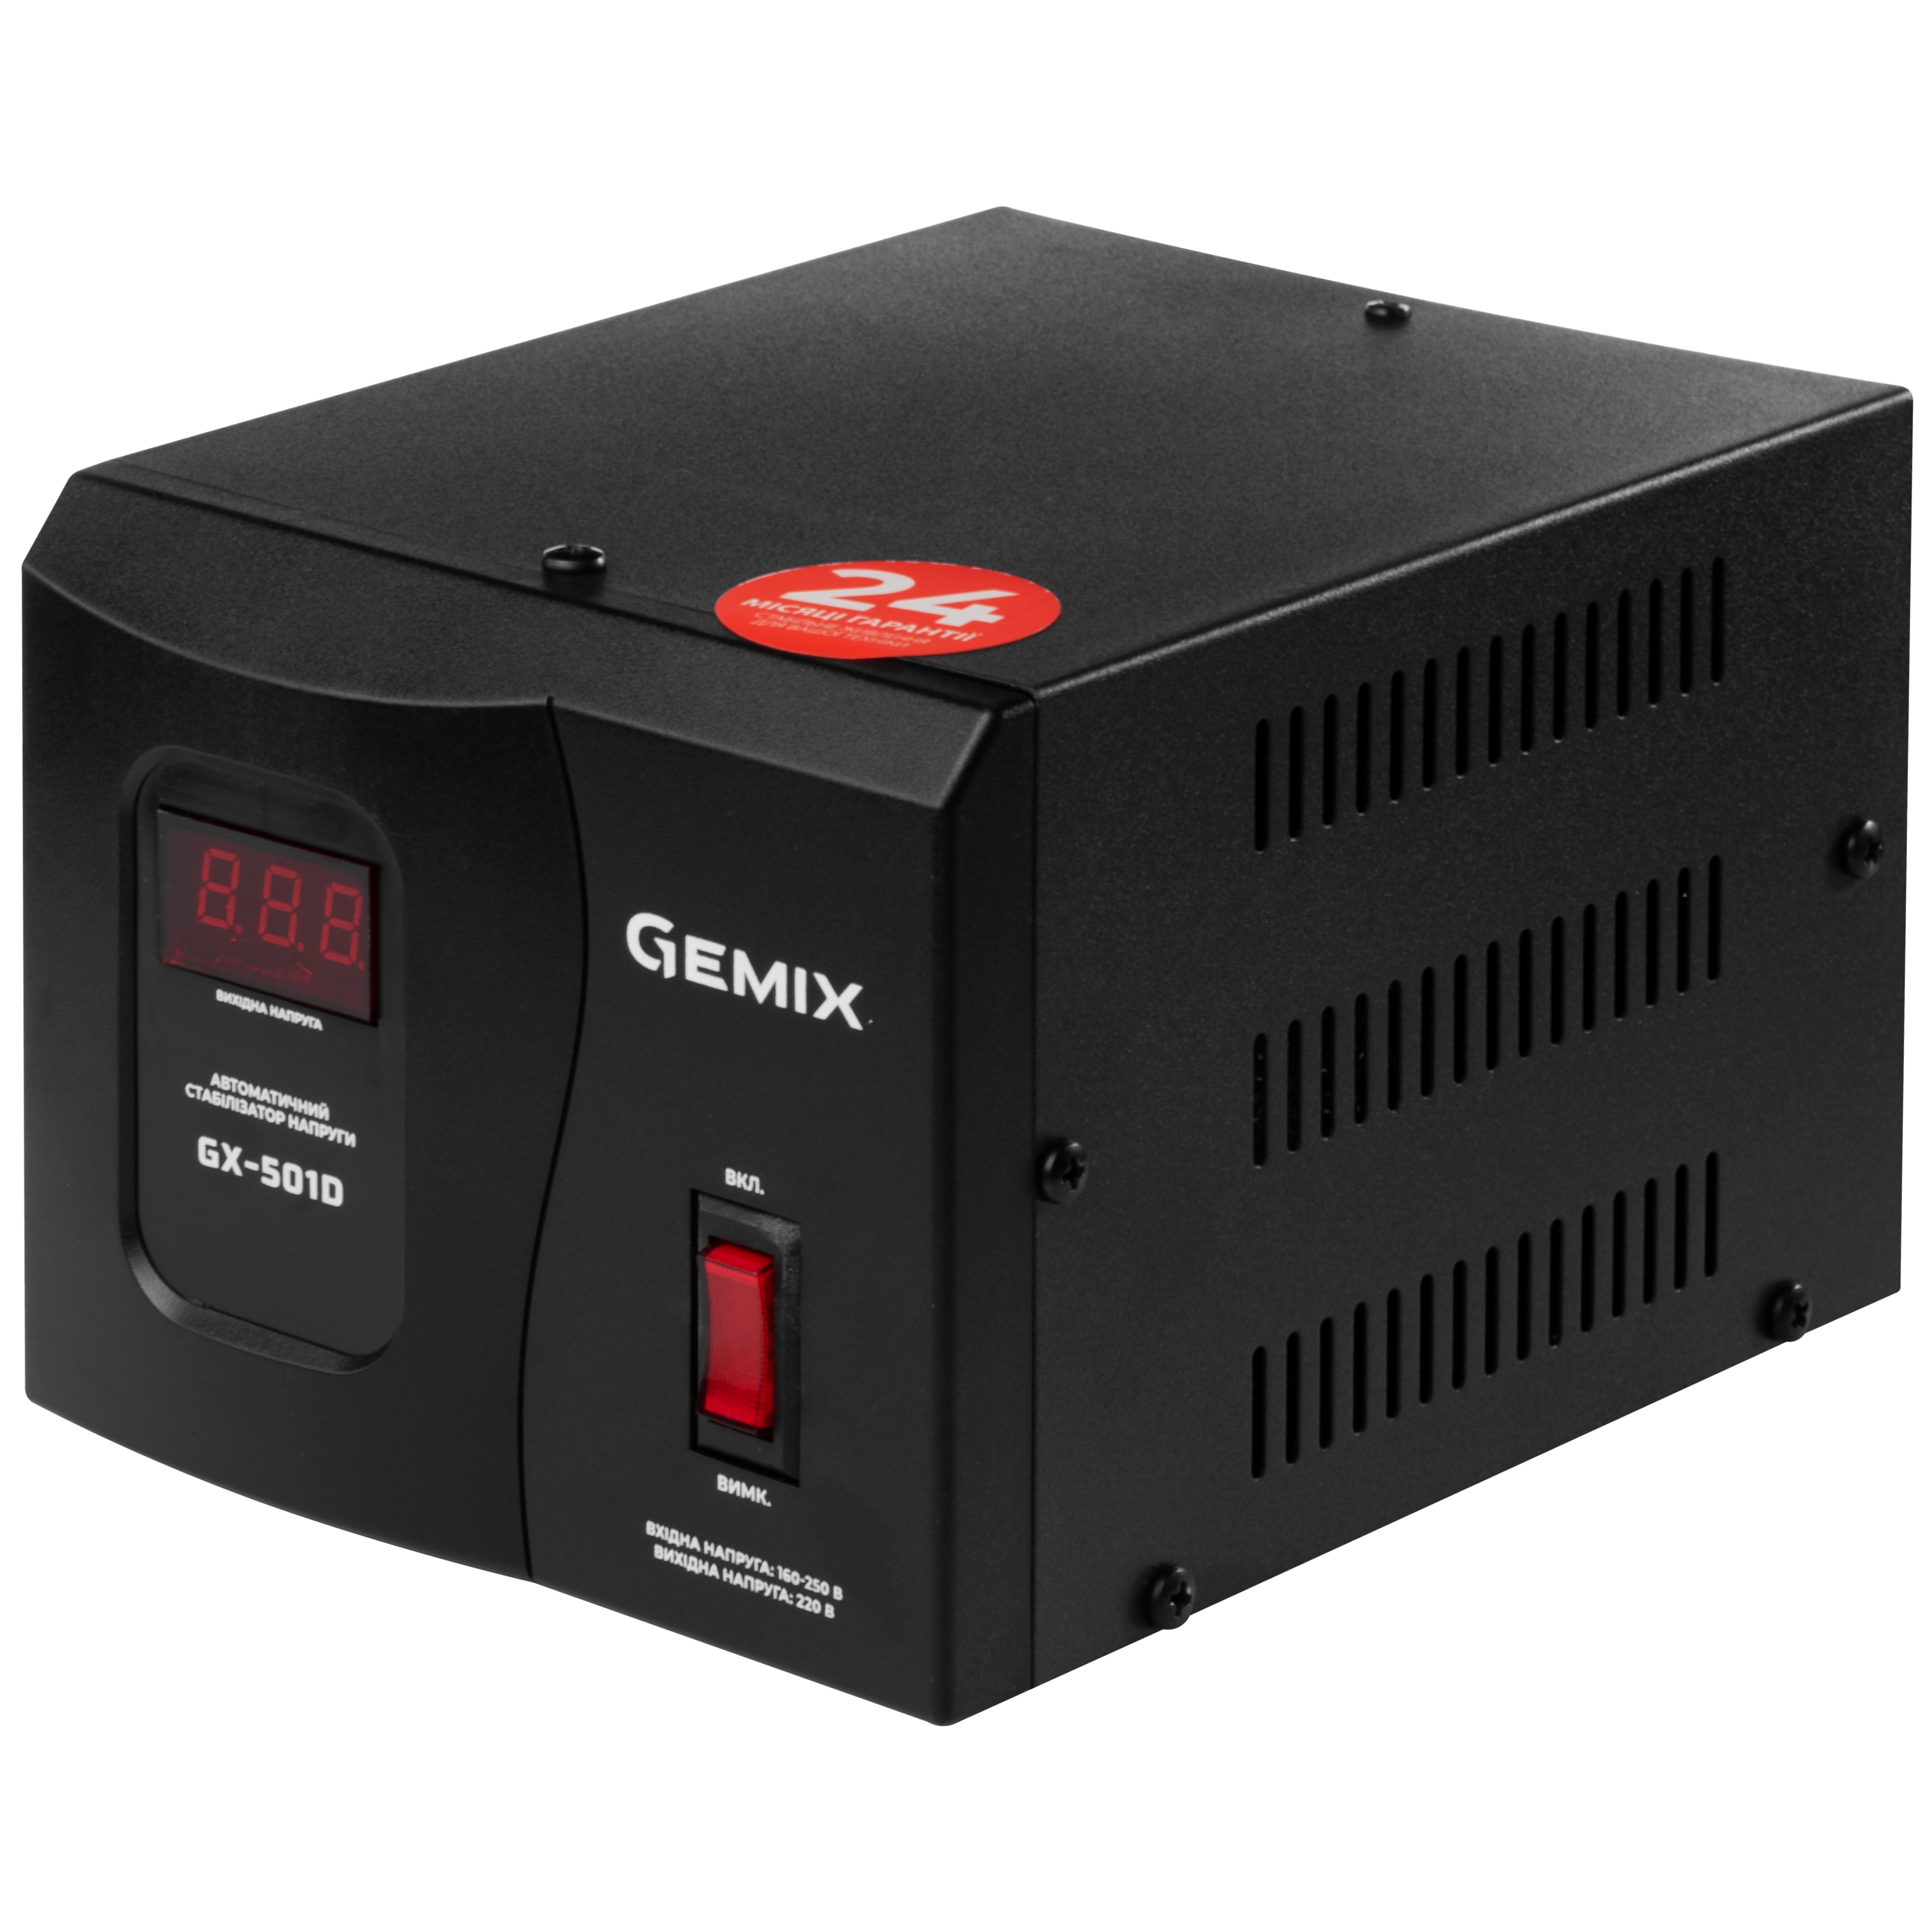 Інструкція релейний стабілізатор Gemix GX-501D